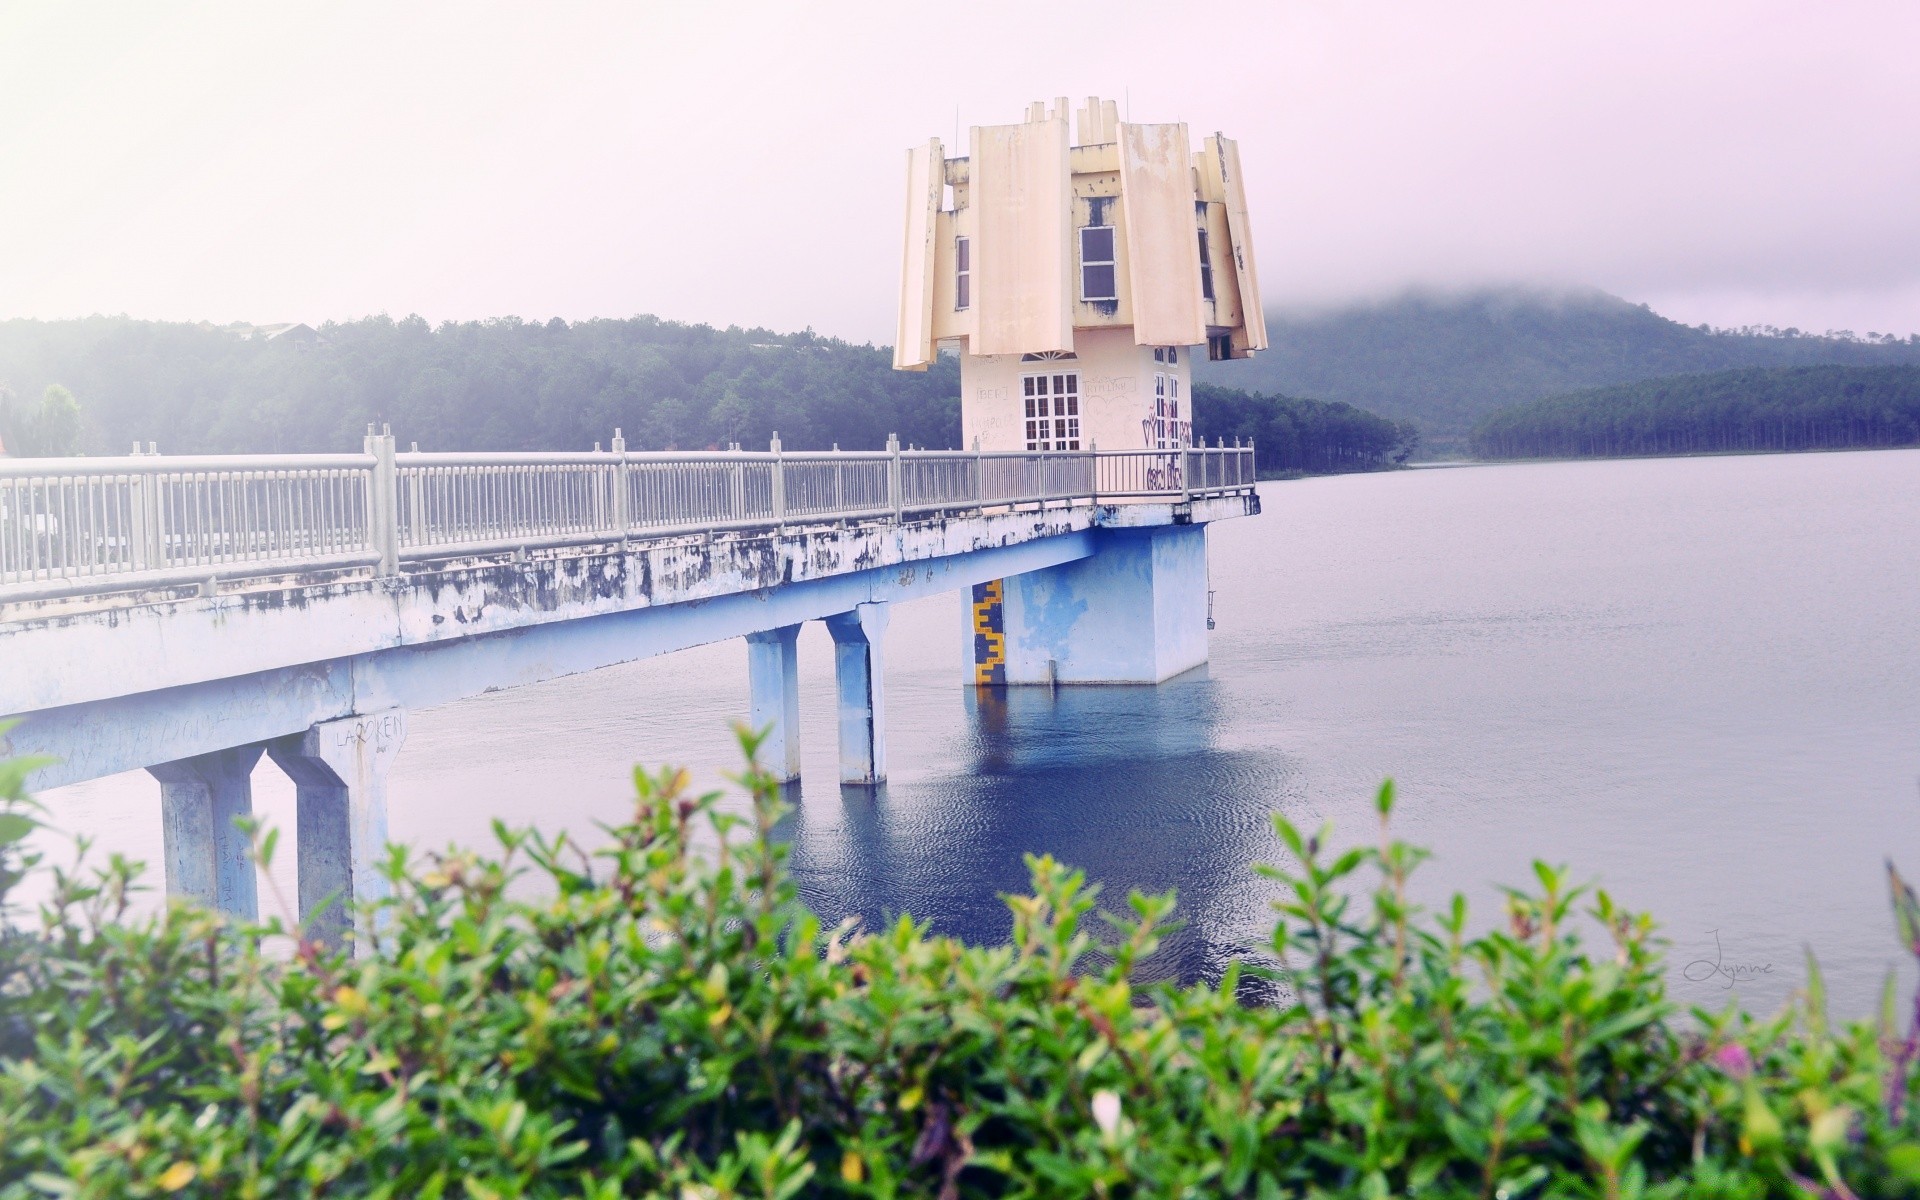 озера воды на открытом воздухе путешествия природа небо река мост лето пейзаж архитектура транспортная система